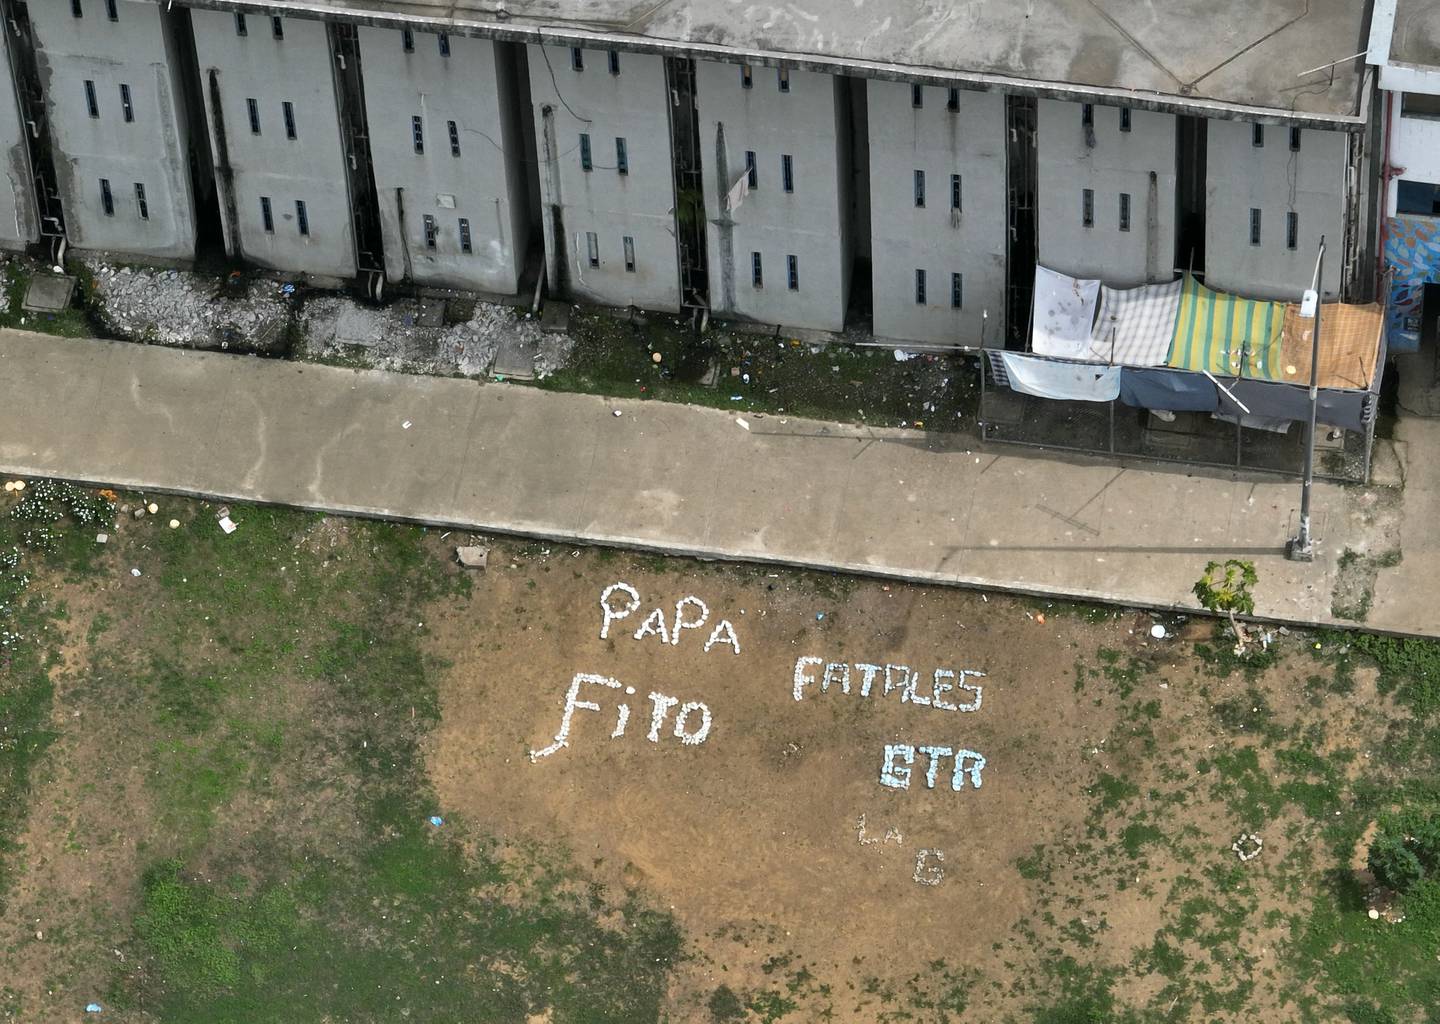 Vista aérea que muestra mensajes sobre la banda criminal Adolfo "Fito" Macías, escritos por reclusos de la prisión Regional 8 de Guayaquil, Ecuador, un día después de que la Policía Nacional y las Fuerzas Armadas realizaran un operativo conjunto de seguridad en el instalaciones.